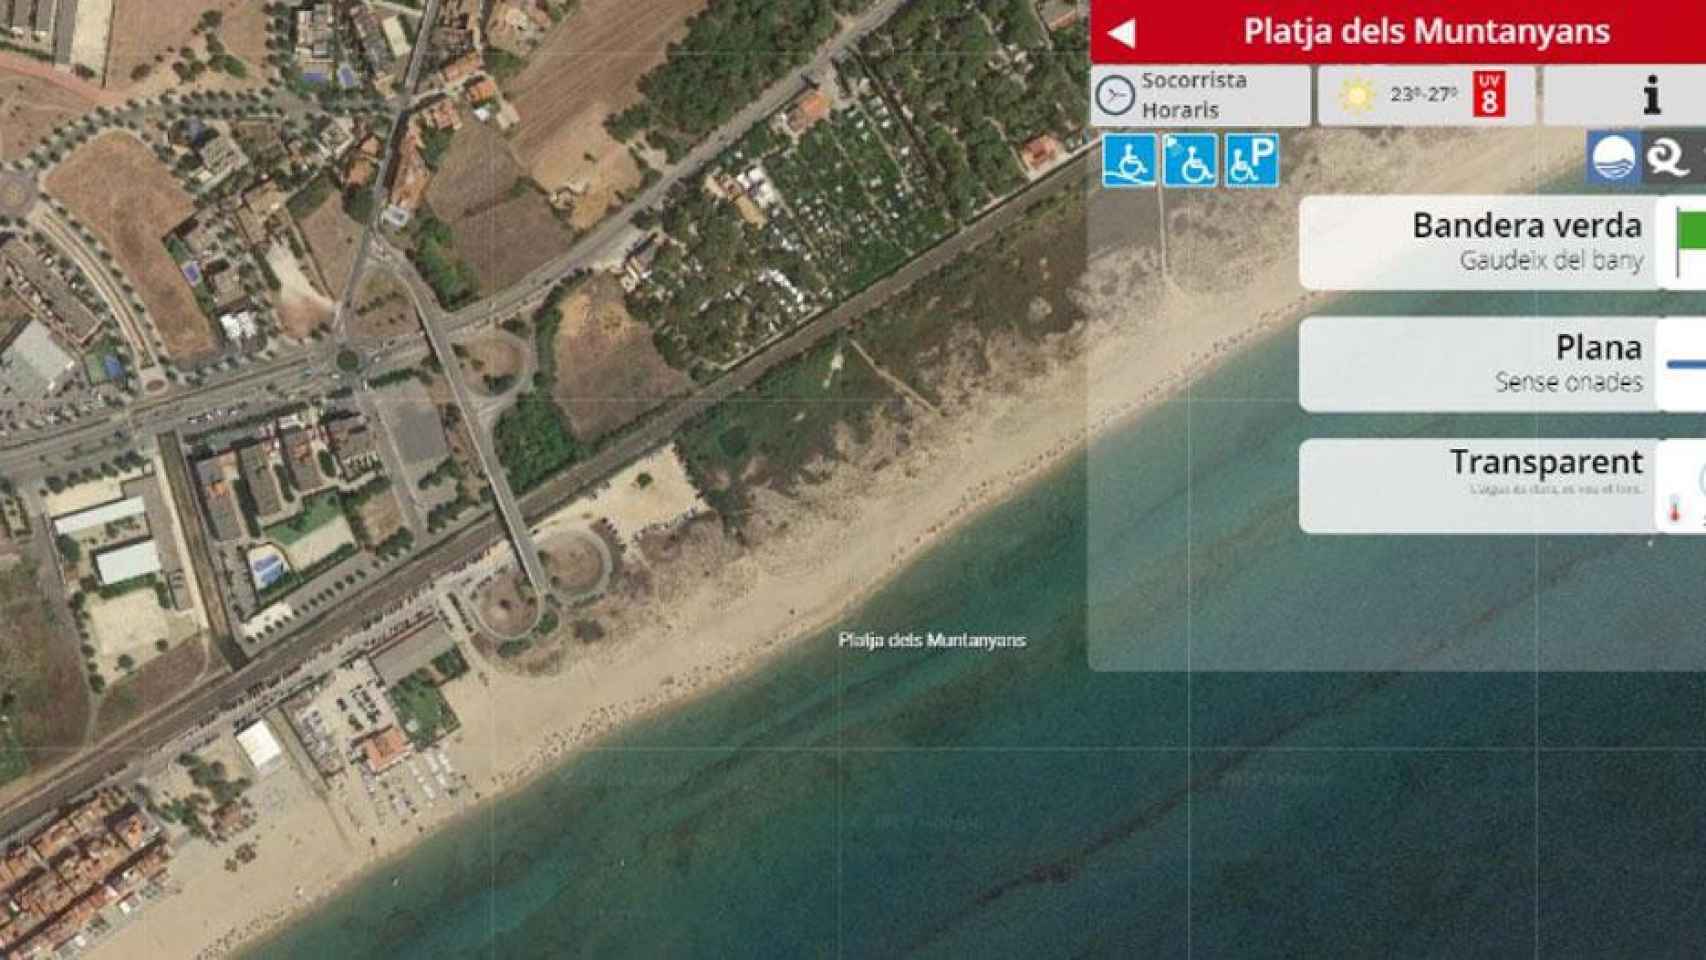 17 muertos en las playas catalanas en lo que va de verano